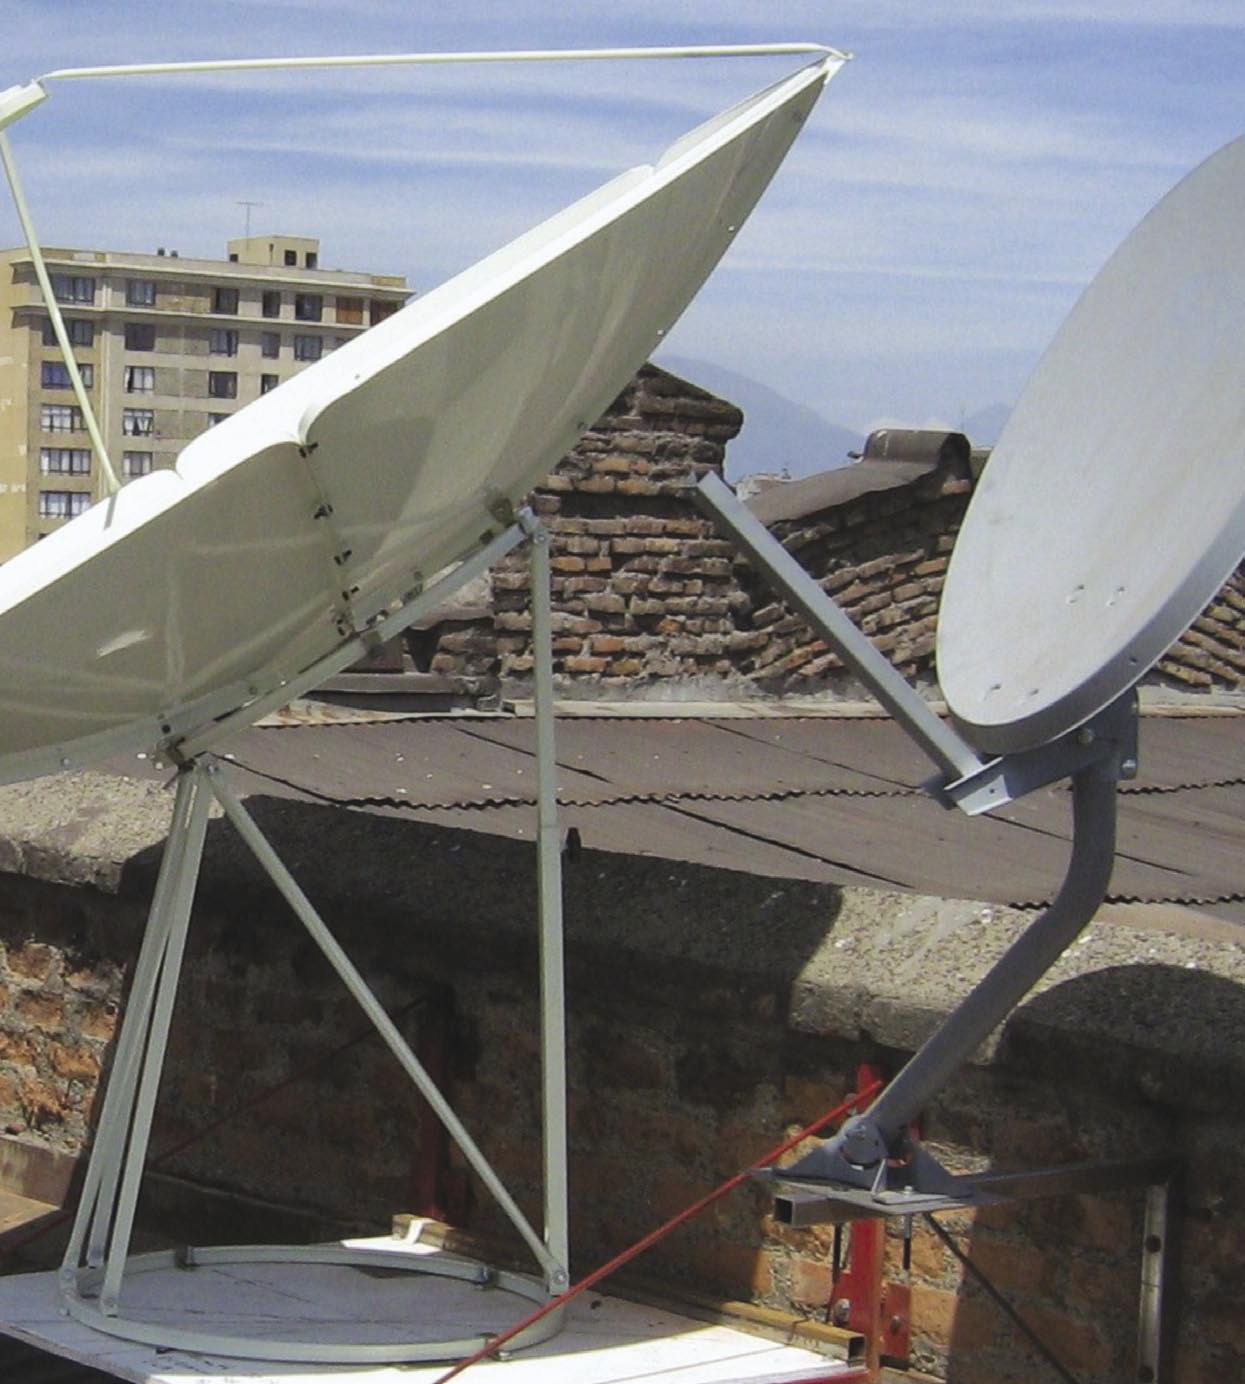 Juan Carlos, Santiago daki evinin çatısını çanaklara ayırmış. Uzakta, Cordilleras dağlarının fon oluşturduğu Şilili Telekom şirketi ENTEL in yayın kulesi görülüyor. TELE-satellite World www.